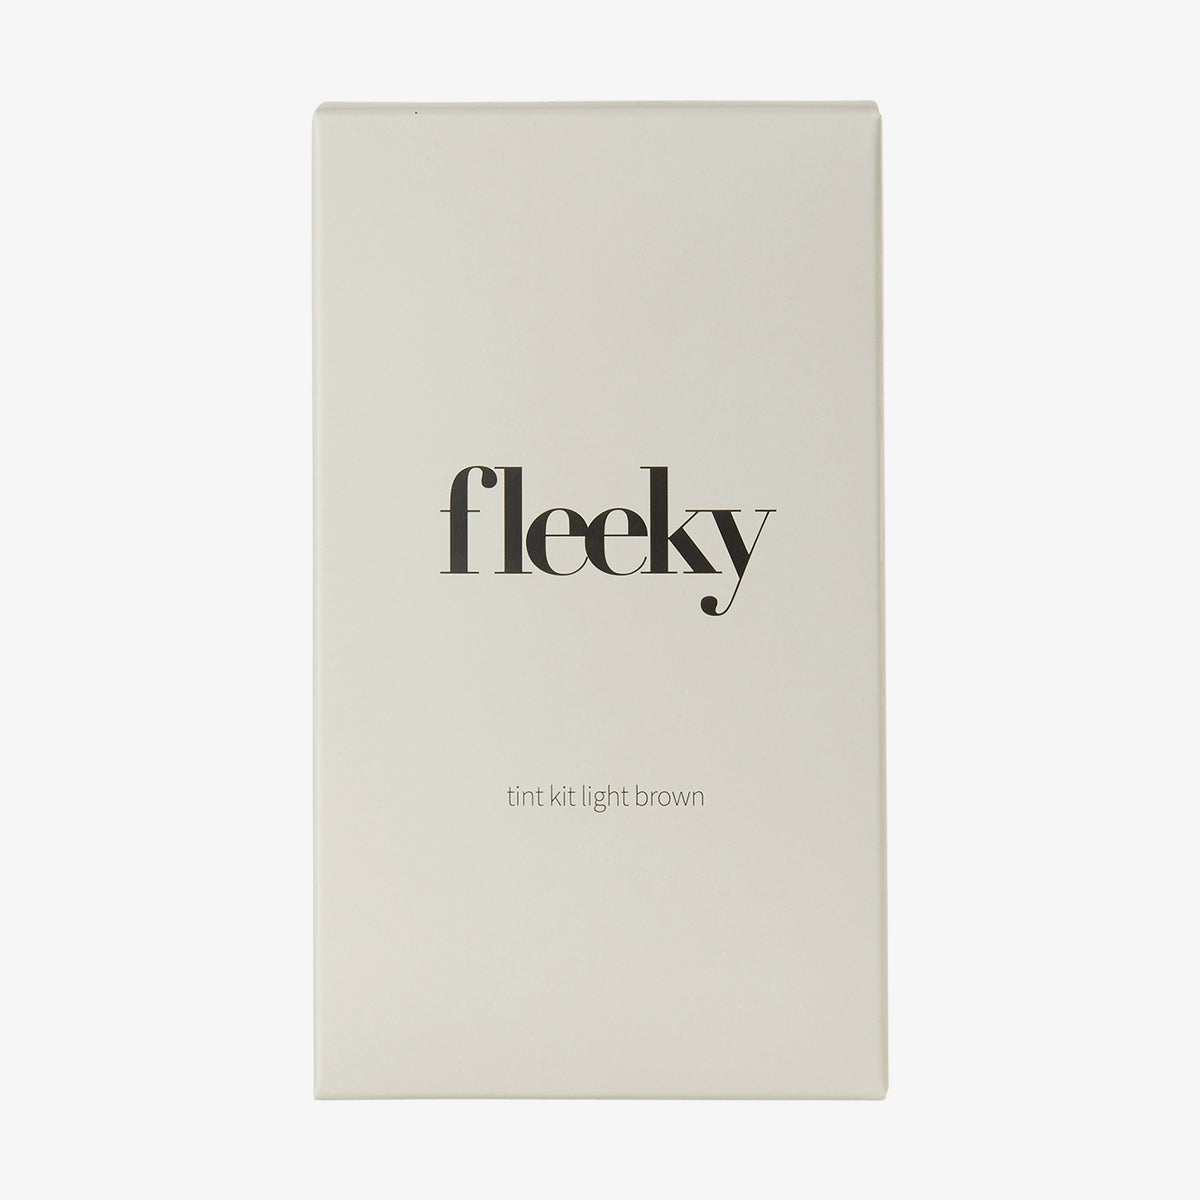 fleeky | Brow Tint Kit Light Brown